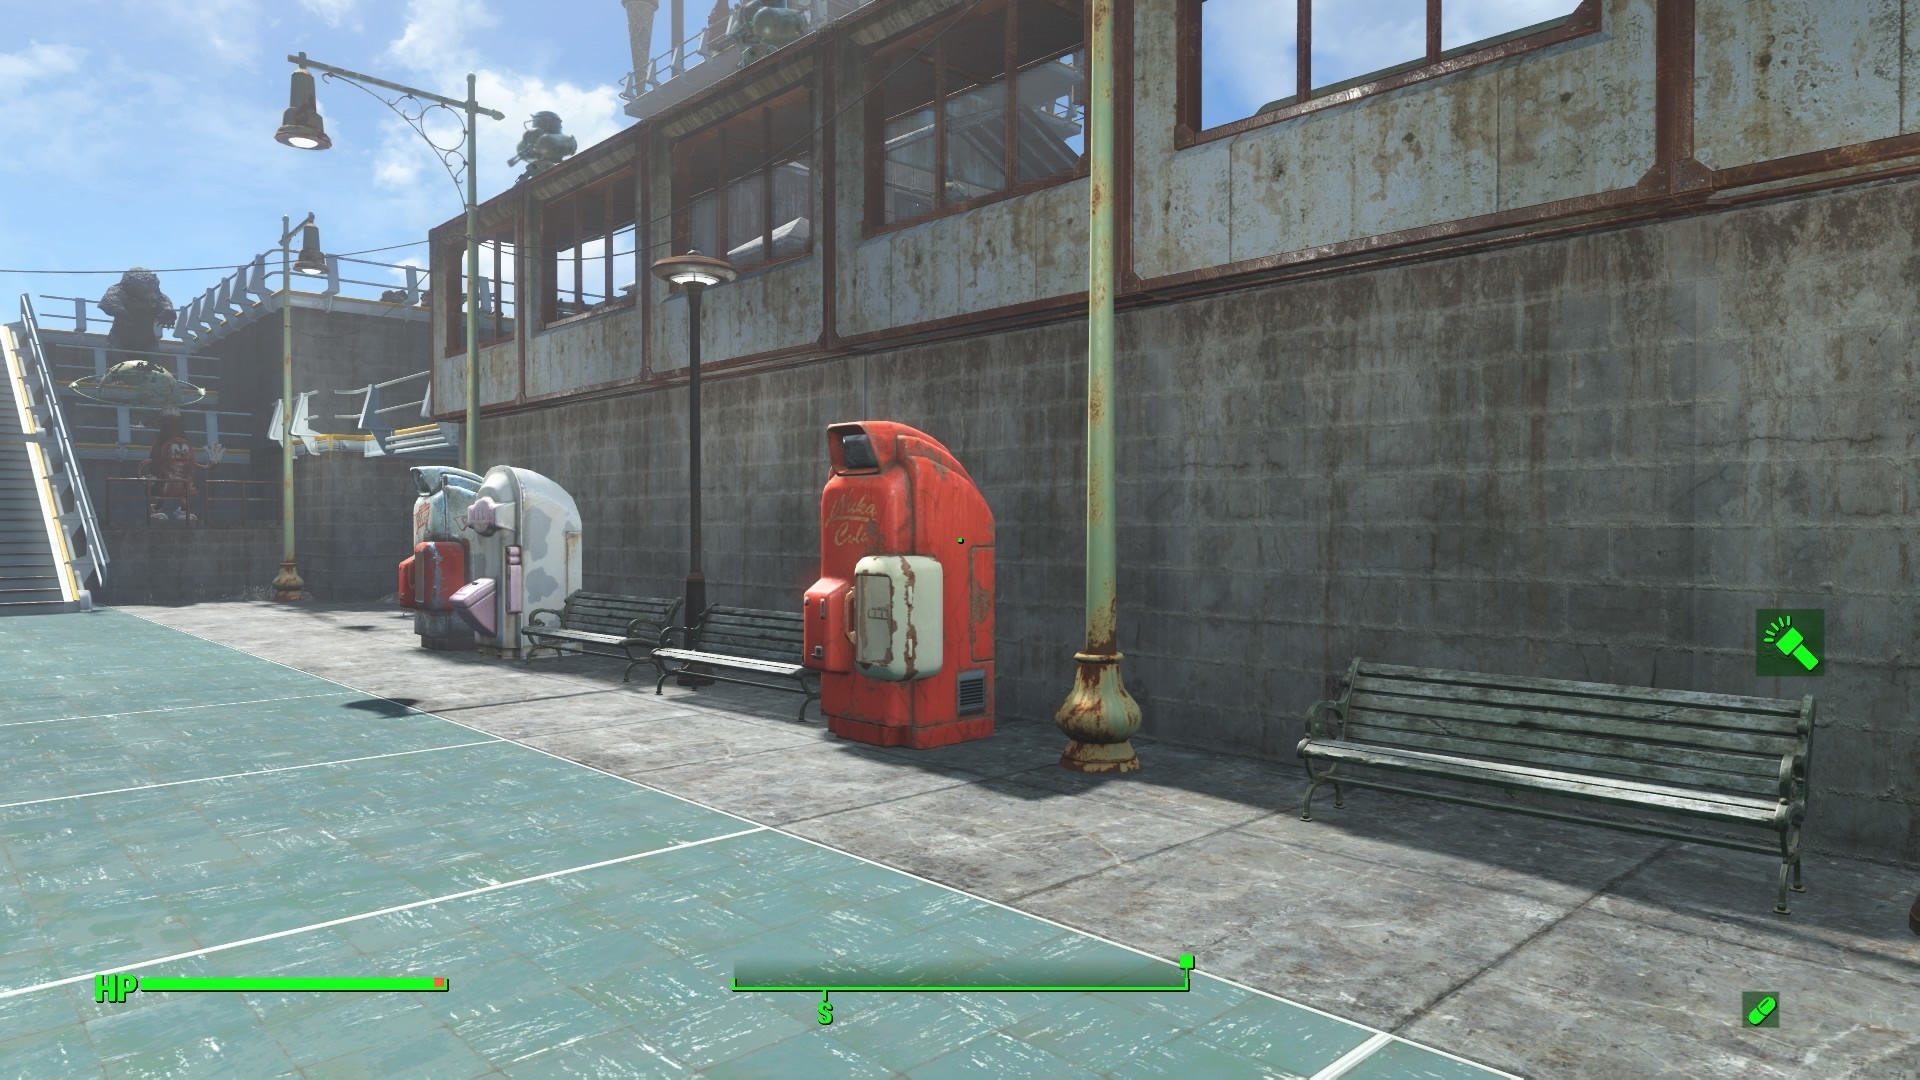 Fallout4 港町の作り方 建築例 作り方 特徴等 初心者ブロガーの徒然日記